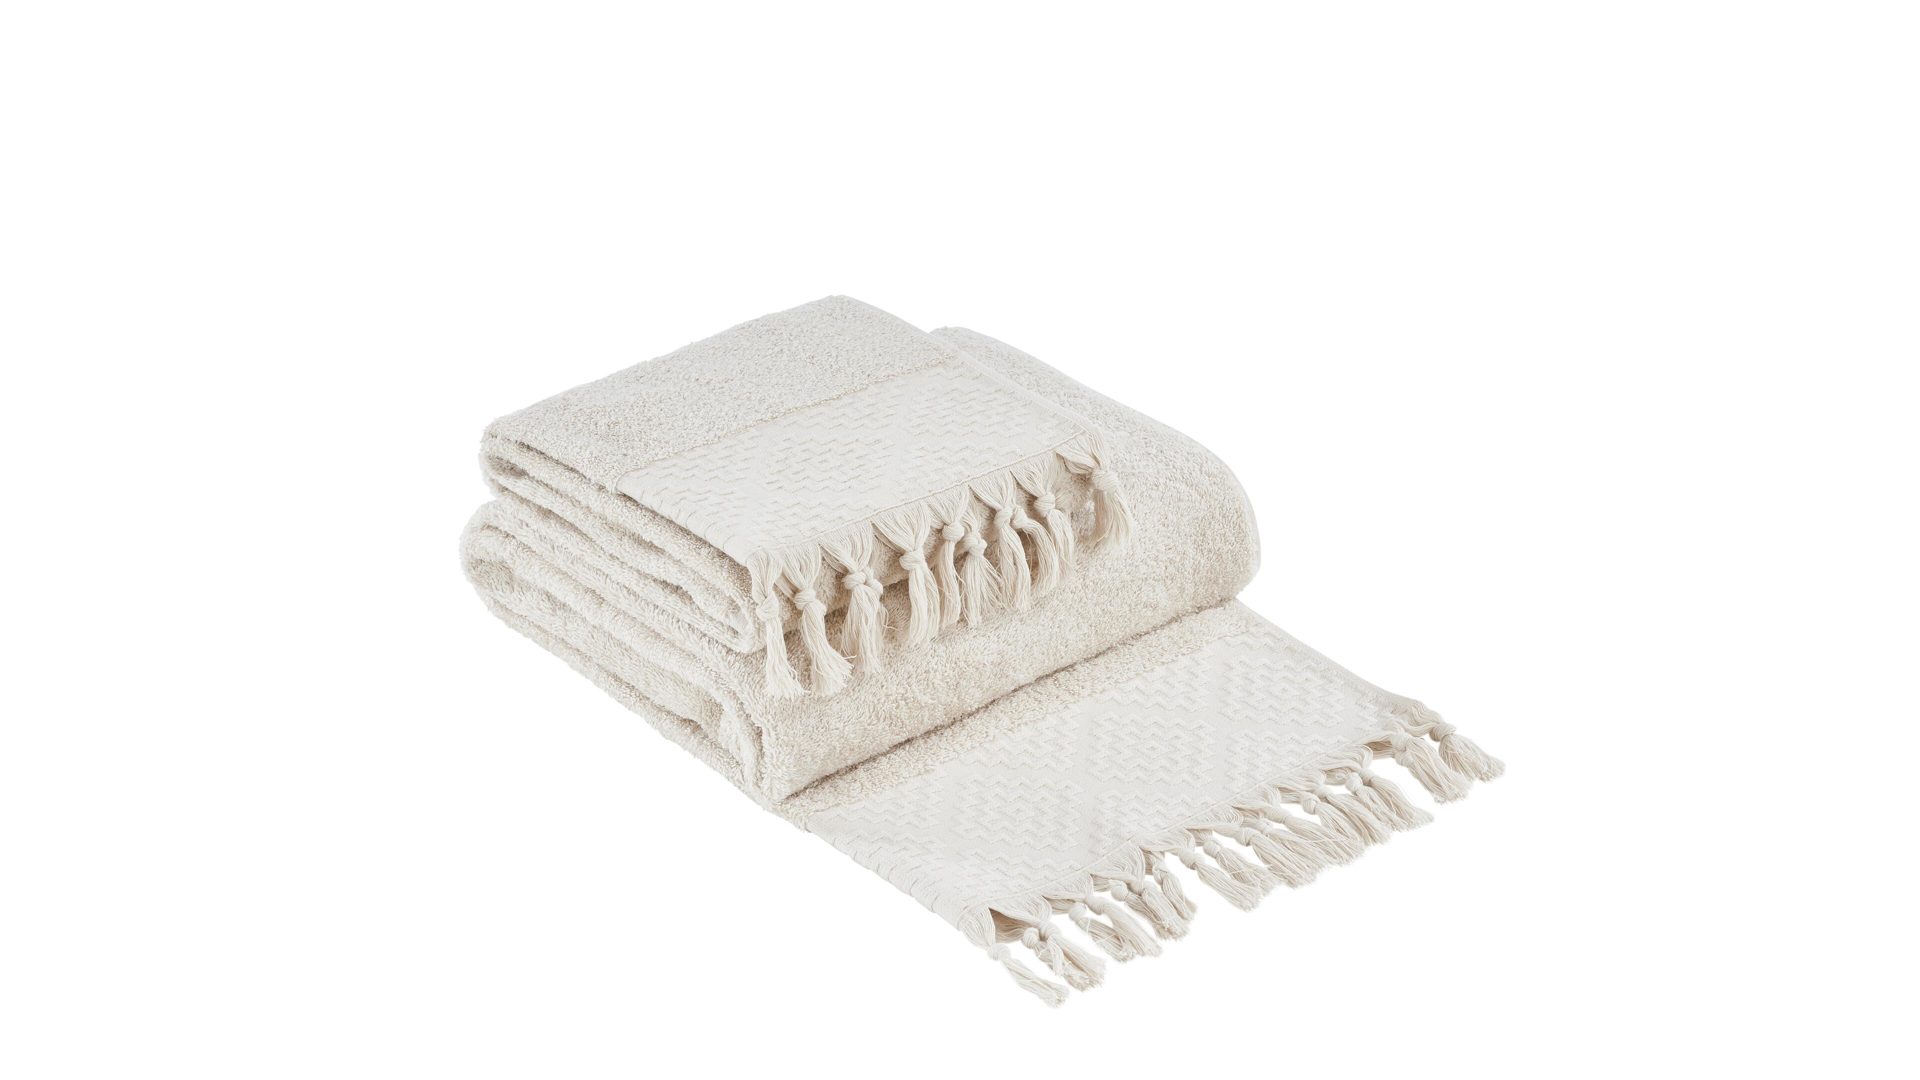 Handtuch-Set Done® by karabel home company aus Stoff in Beige DONE® Handtuch-Set Provence Boheme - Heimtextilien beige Baumwolle  – zweiteilig